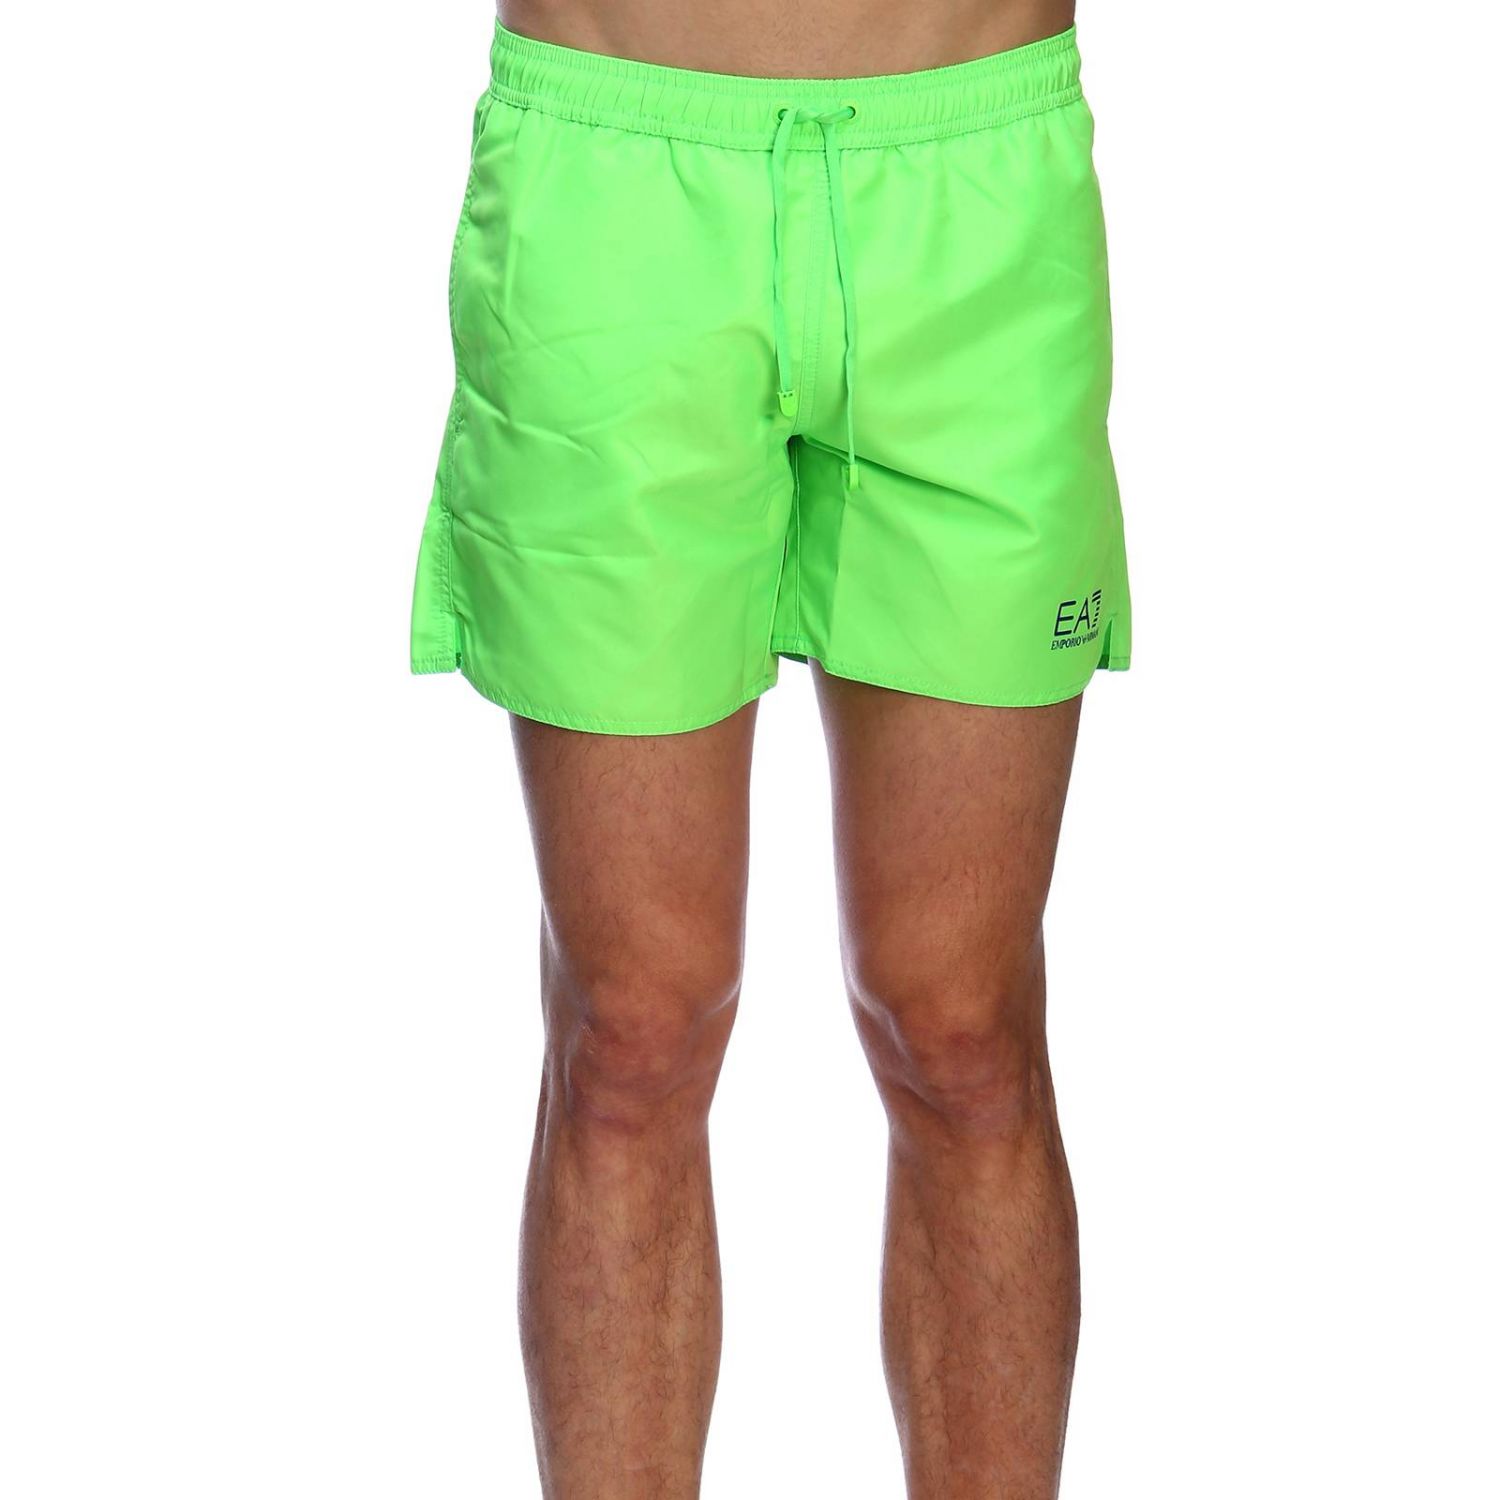 Ea7 Swimwear Outlet: Swimsuit men - Green | Swimsuit Ea7 Swimwear ...